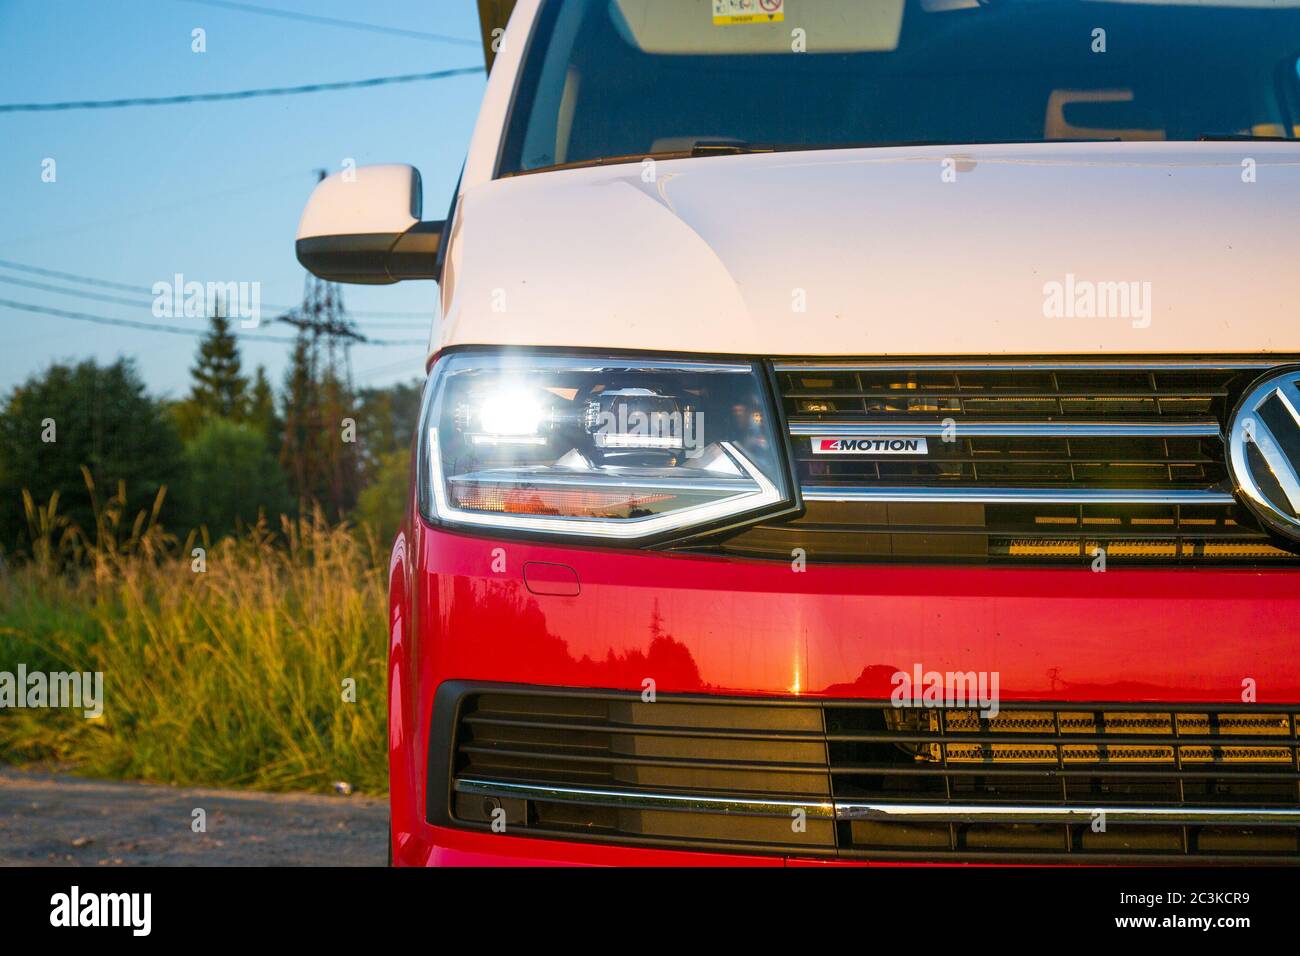 Saint-Pétersbourg, Russie - 22 juillet 2019 : Volkswagen Multivan California Ocean (transporteur T6), de couleur rouge et blanc. Est garé sur la route de campagne. Gros plan des phares À LED Banque D'Images